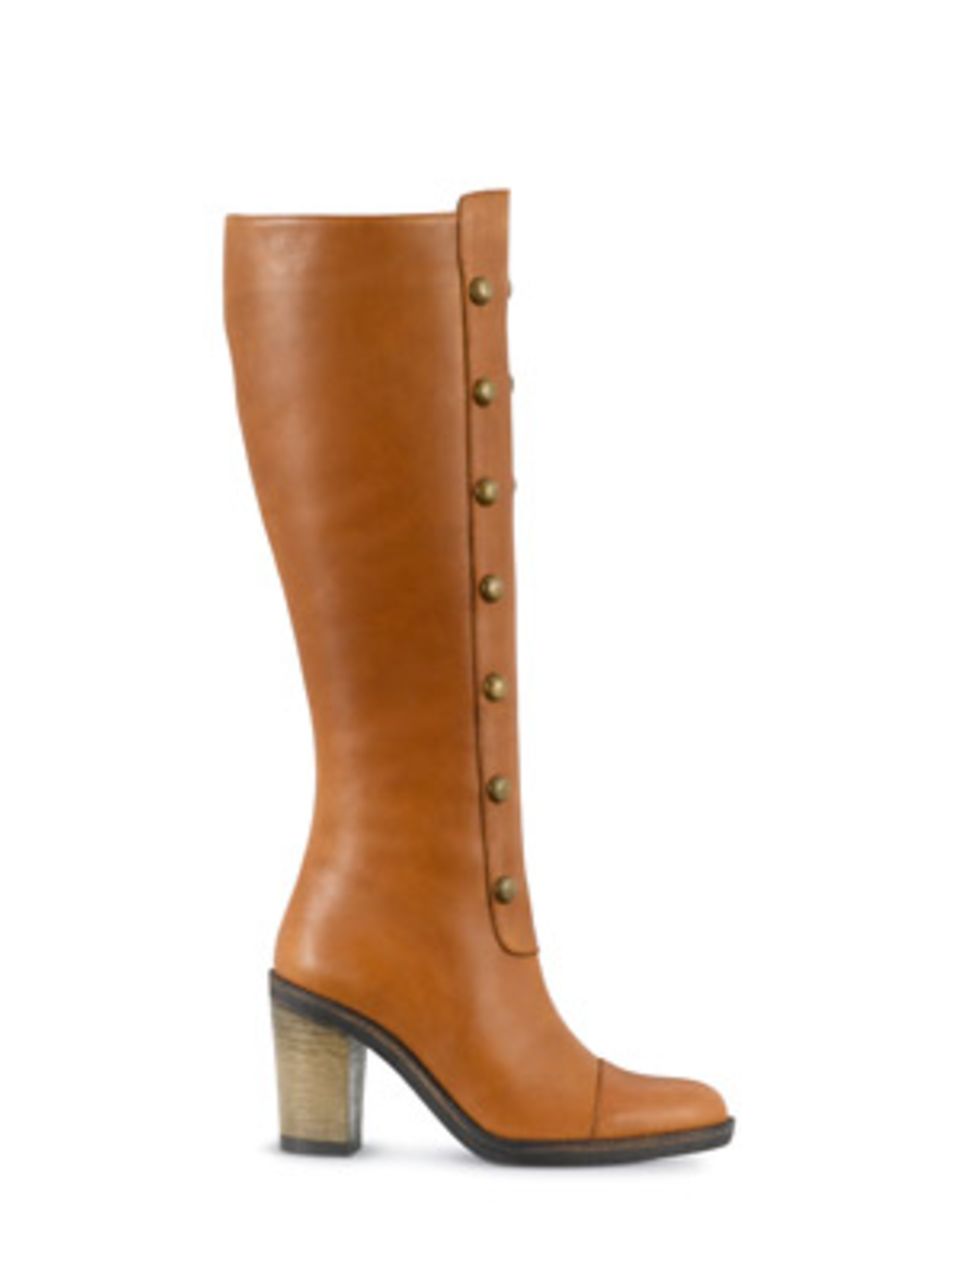 Leder-Stiefel mit hohem Schaft und Metall-Knöpfen am Schienbein von Duo Boots, ca. 170 Euro.